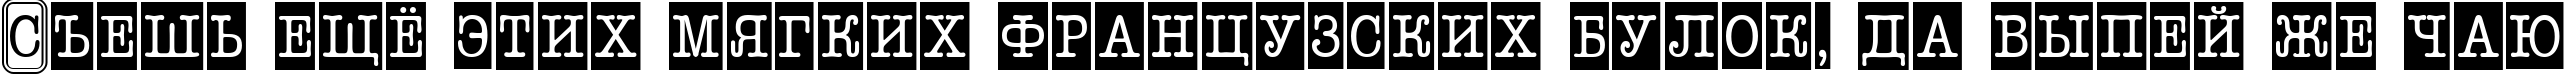 Пример написания шрифтом a_OldTyperNrCmCmb2 текста на русском